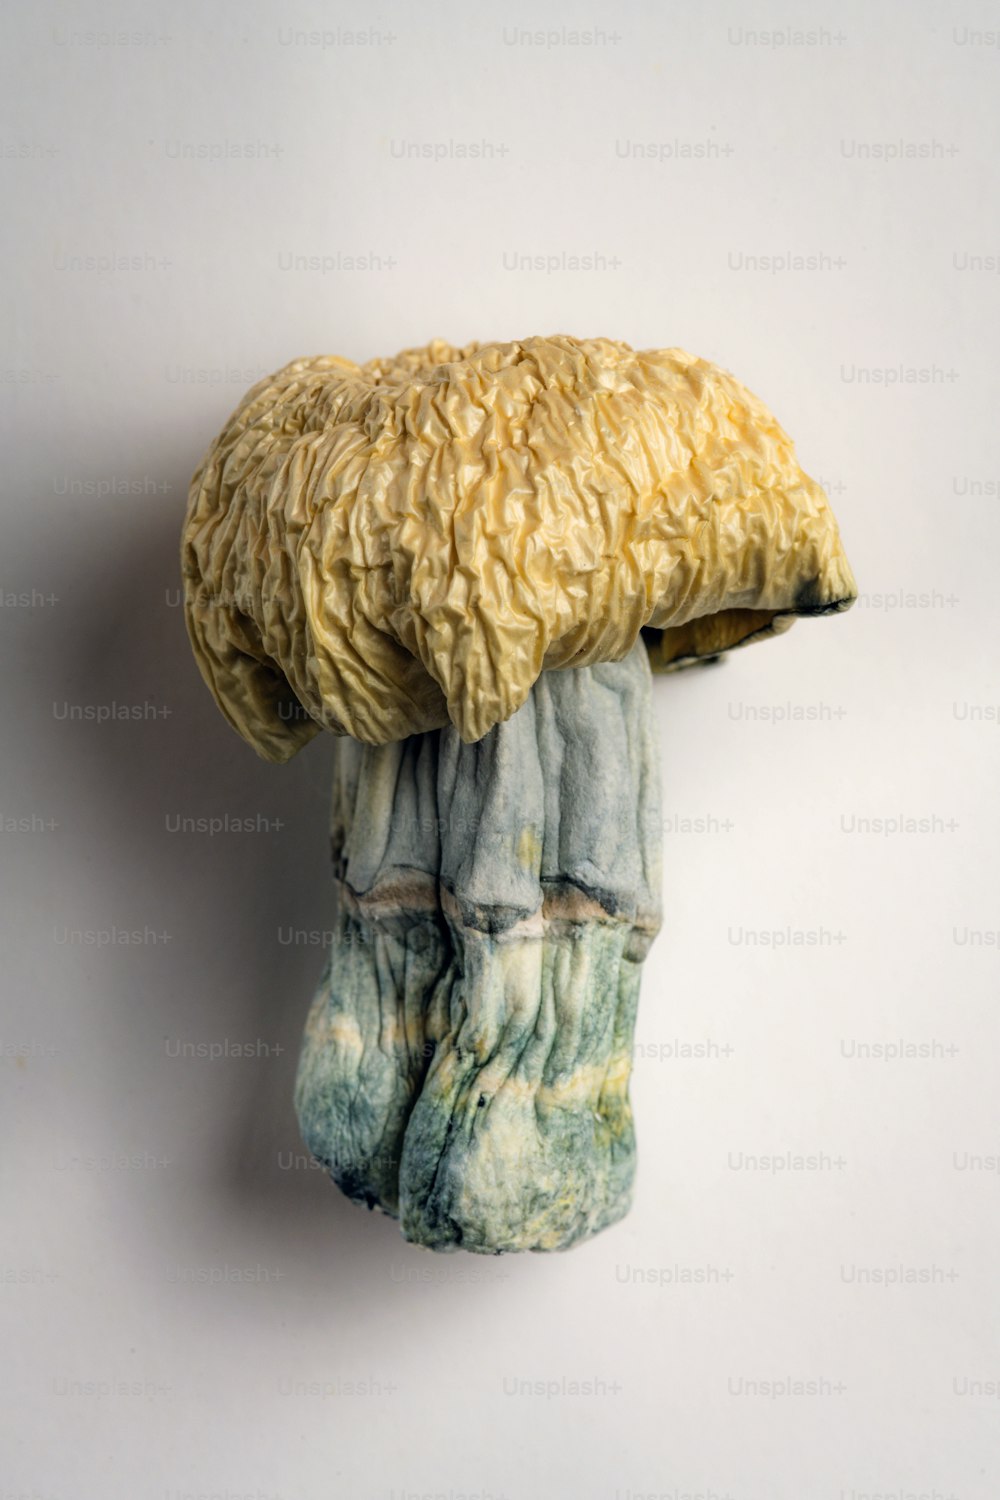 Une sculpture d’un champignon est accrochée à un mur